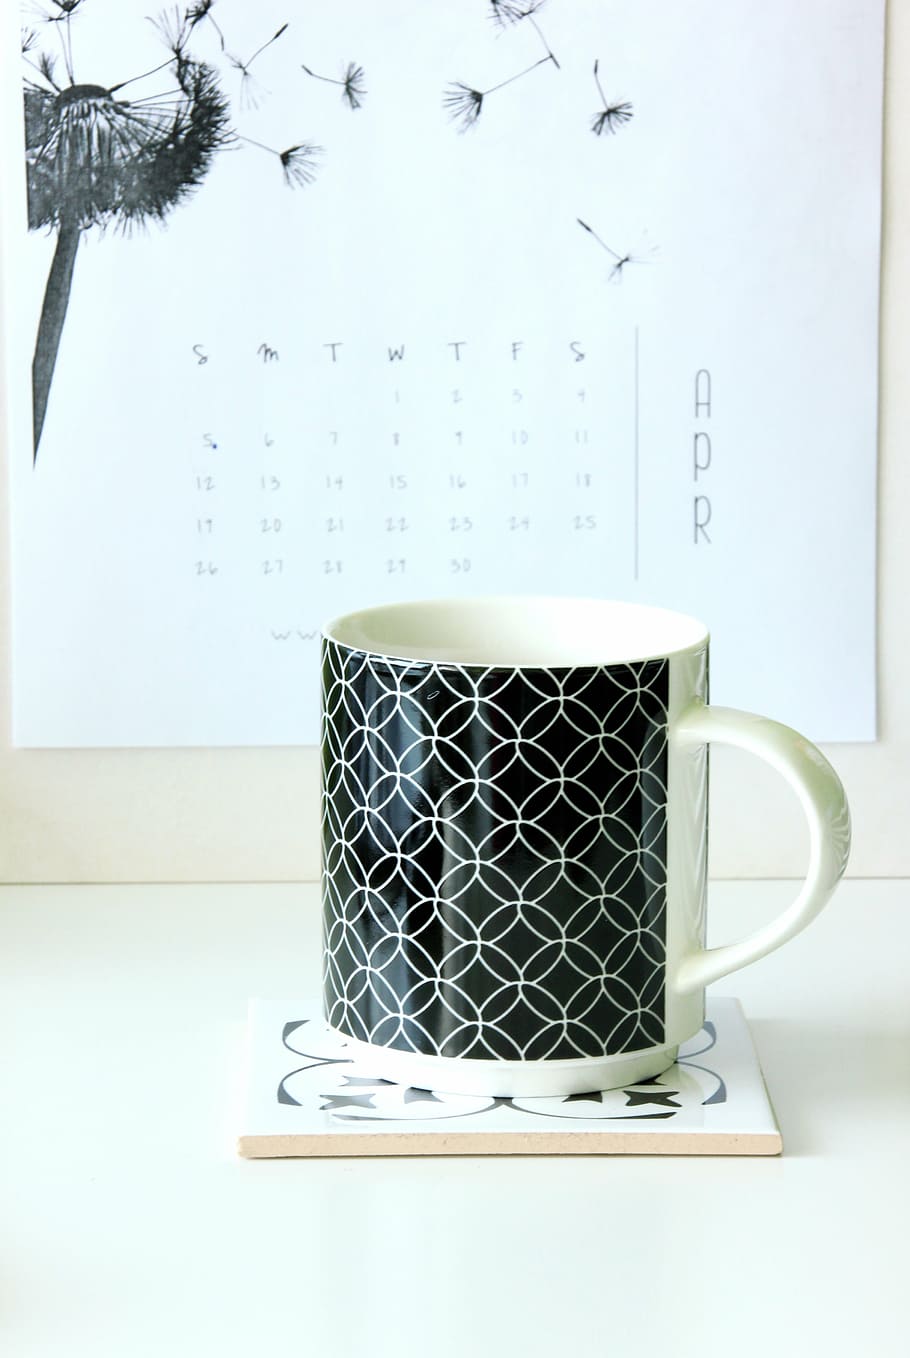 putih, hitam, keramik, mug, coaster, meja kerja, kalender, kopi, minuman, meja